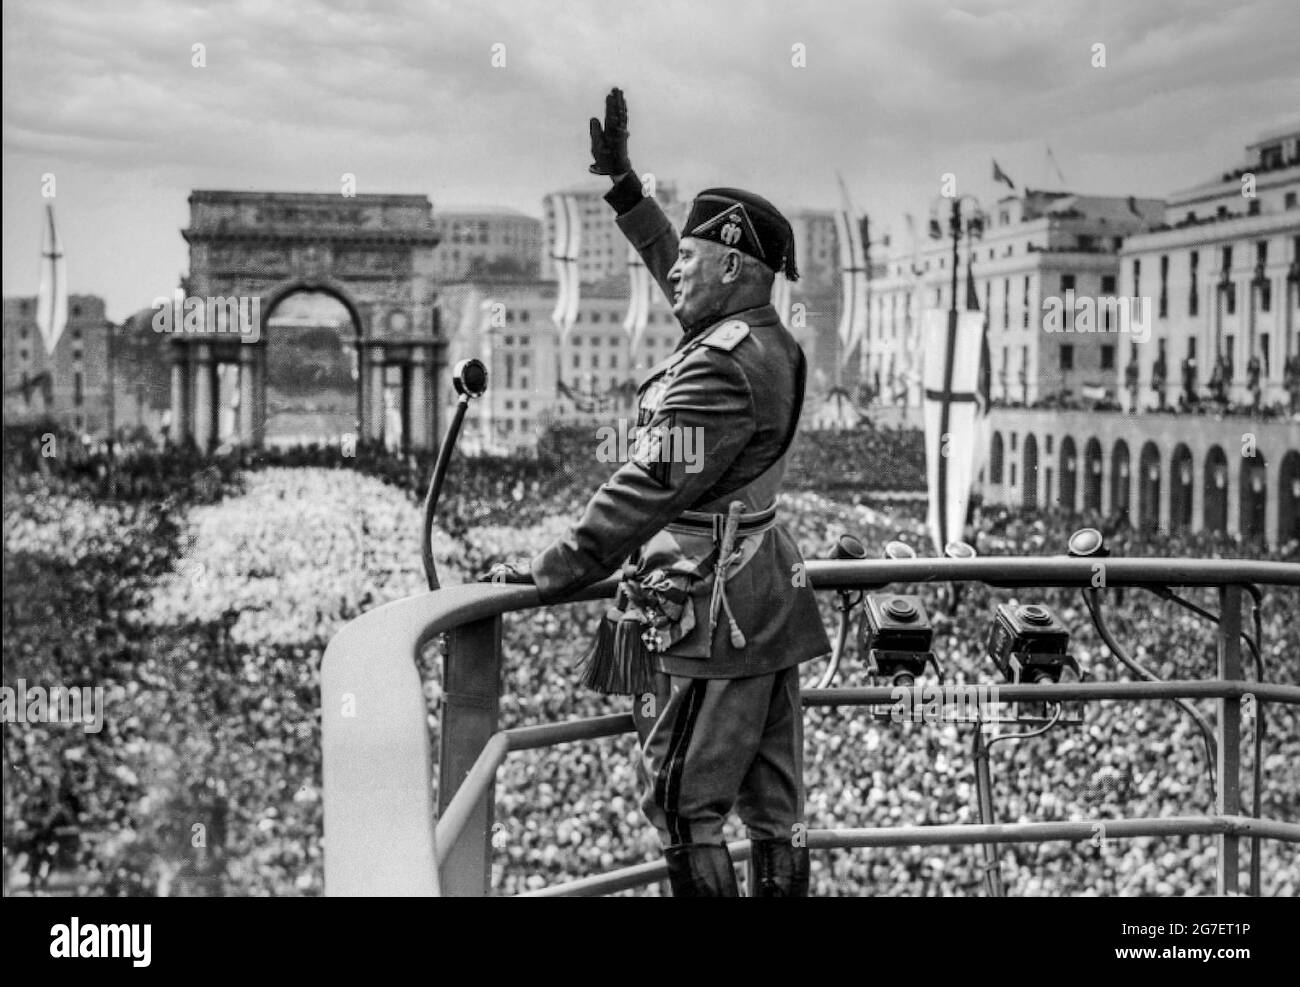 MUSSOLINI DISCORSO 1930s il DULCE ROMA ITALIA DISCORSO fascista italiano Benito Mussolini al culmine della sua popolarità, in uniforme militare con microfono facendo un discorso sul podio rialzato, facista salutando le estatiche folle italiane a Roma Italia nel 1930s. Foto Stock